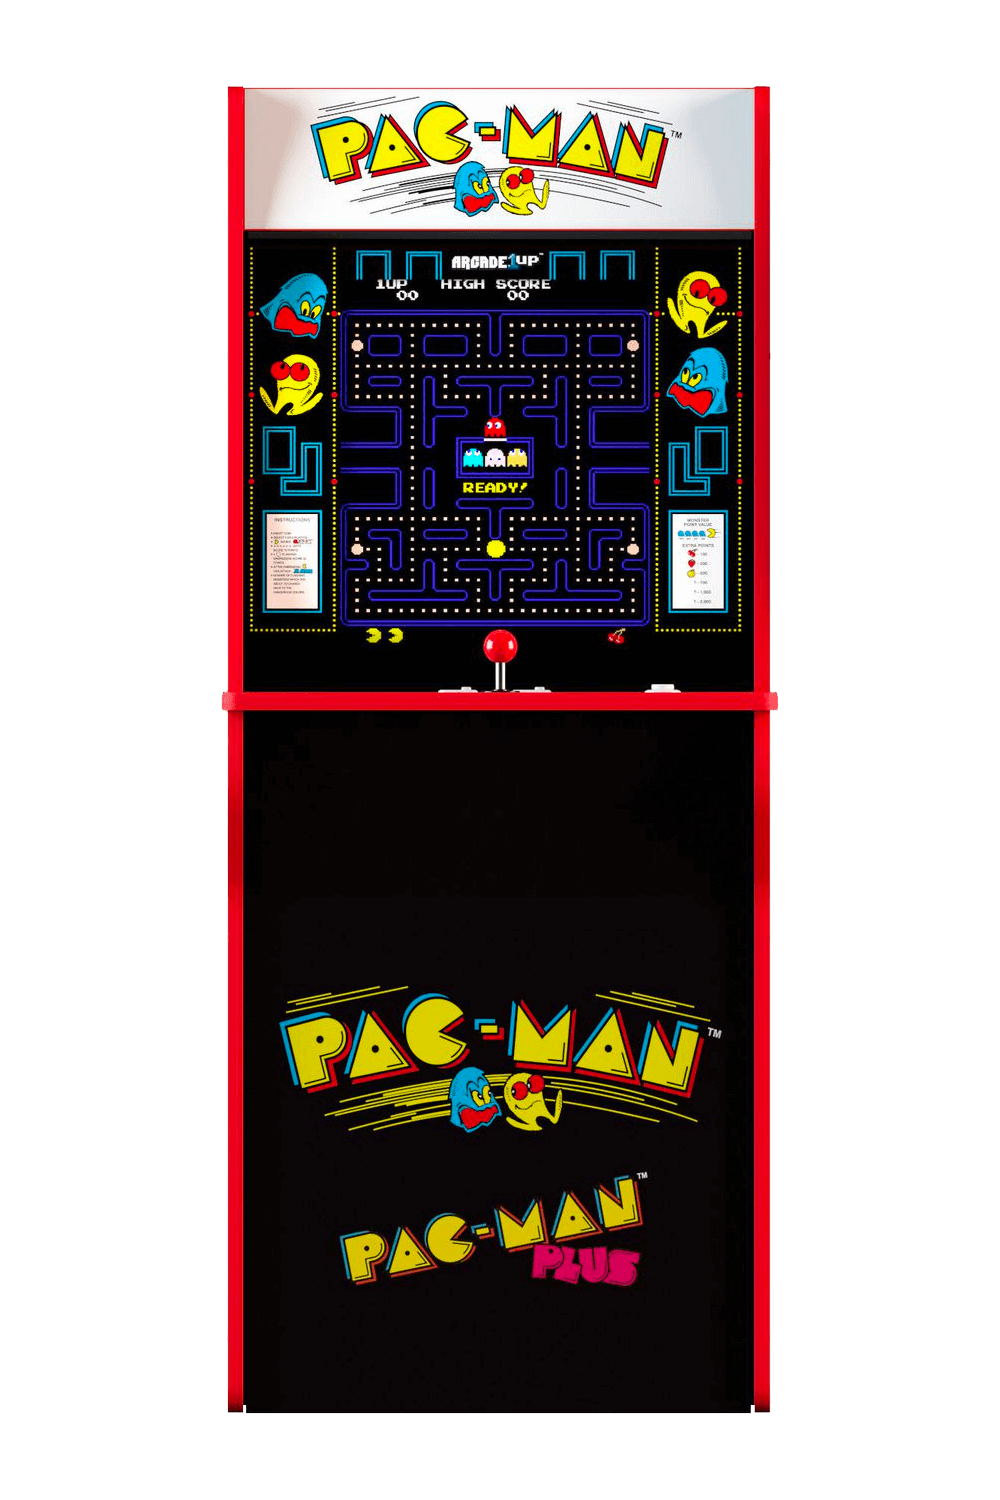 Arcade 1UP PACMAN Arcade Cabinet